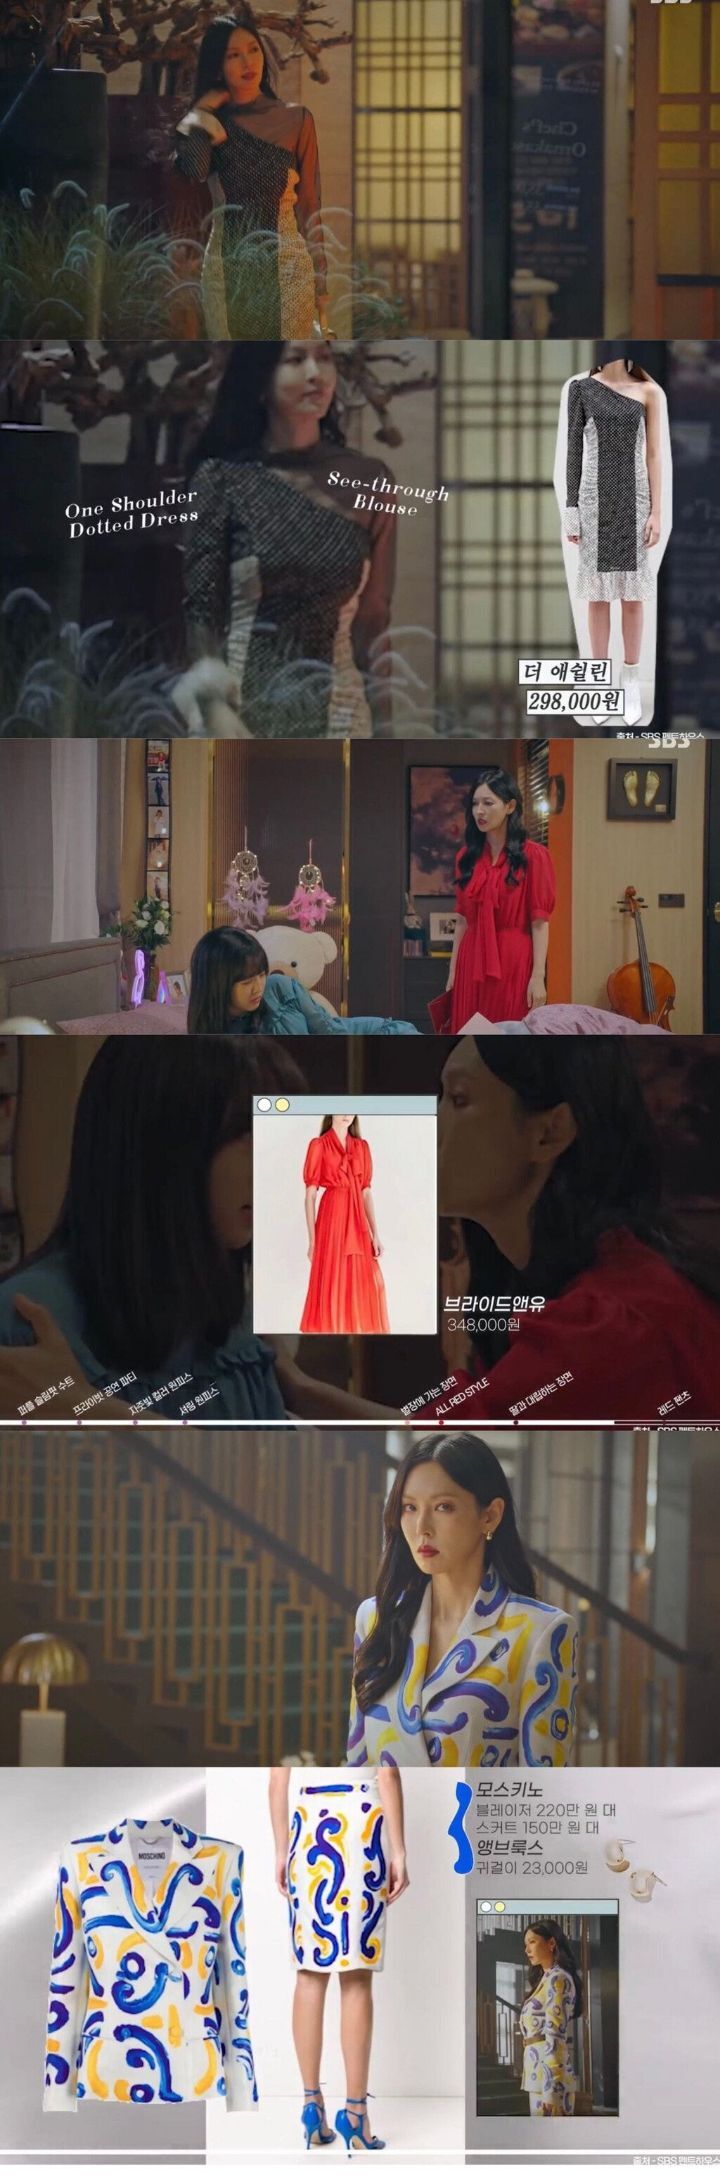 김소연이 펜트하우스에서 입고나온 옷 가격 - 꾸르